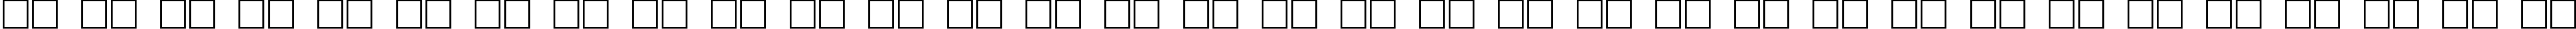 Пример написания русского алфавита шрифтом Electron Cyr Normal